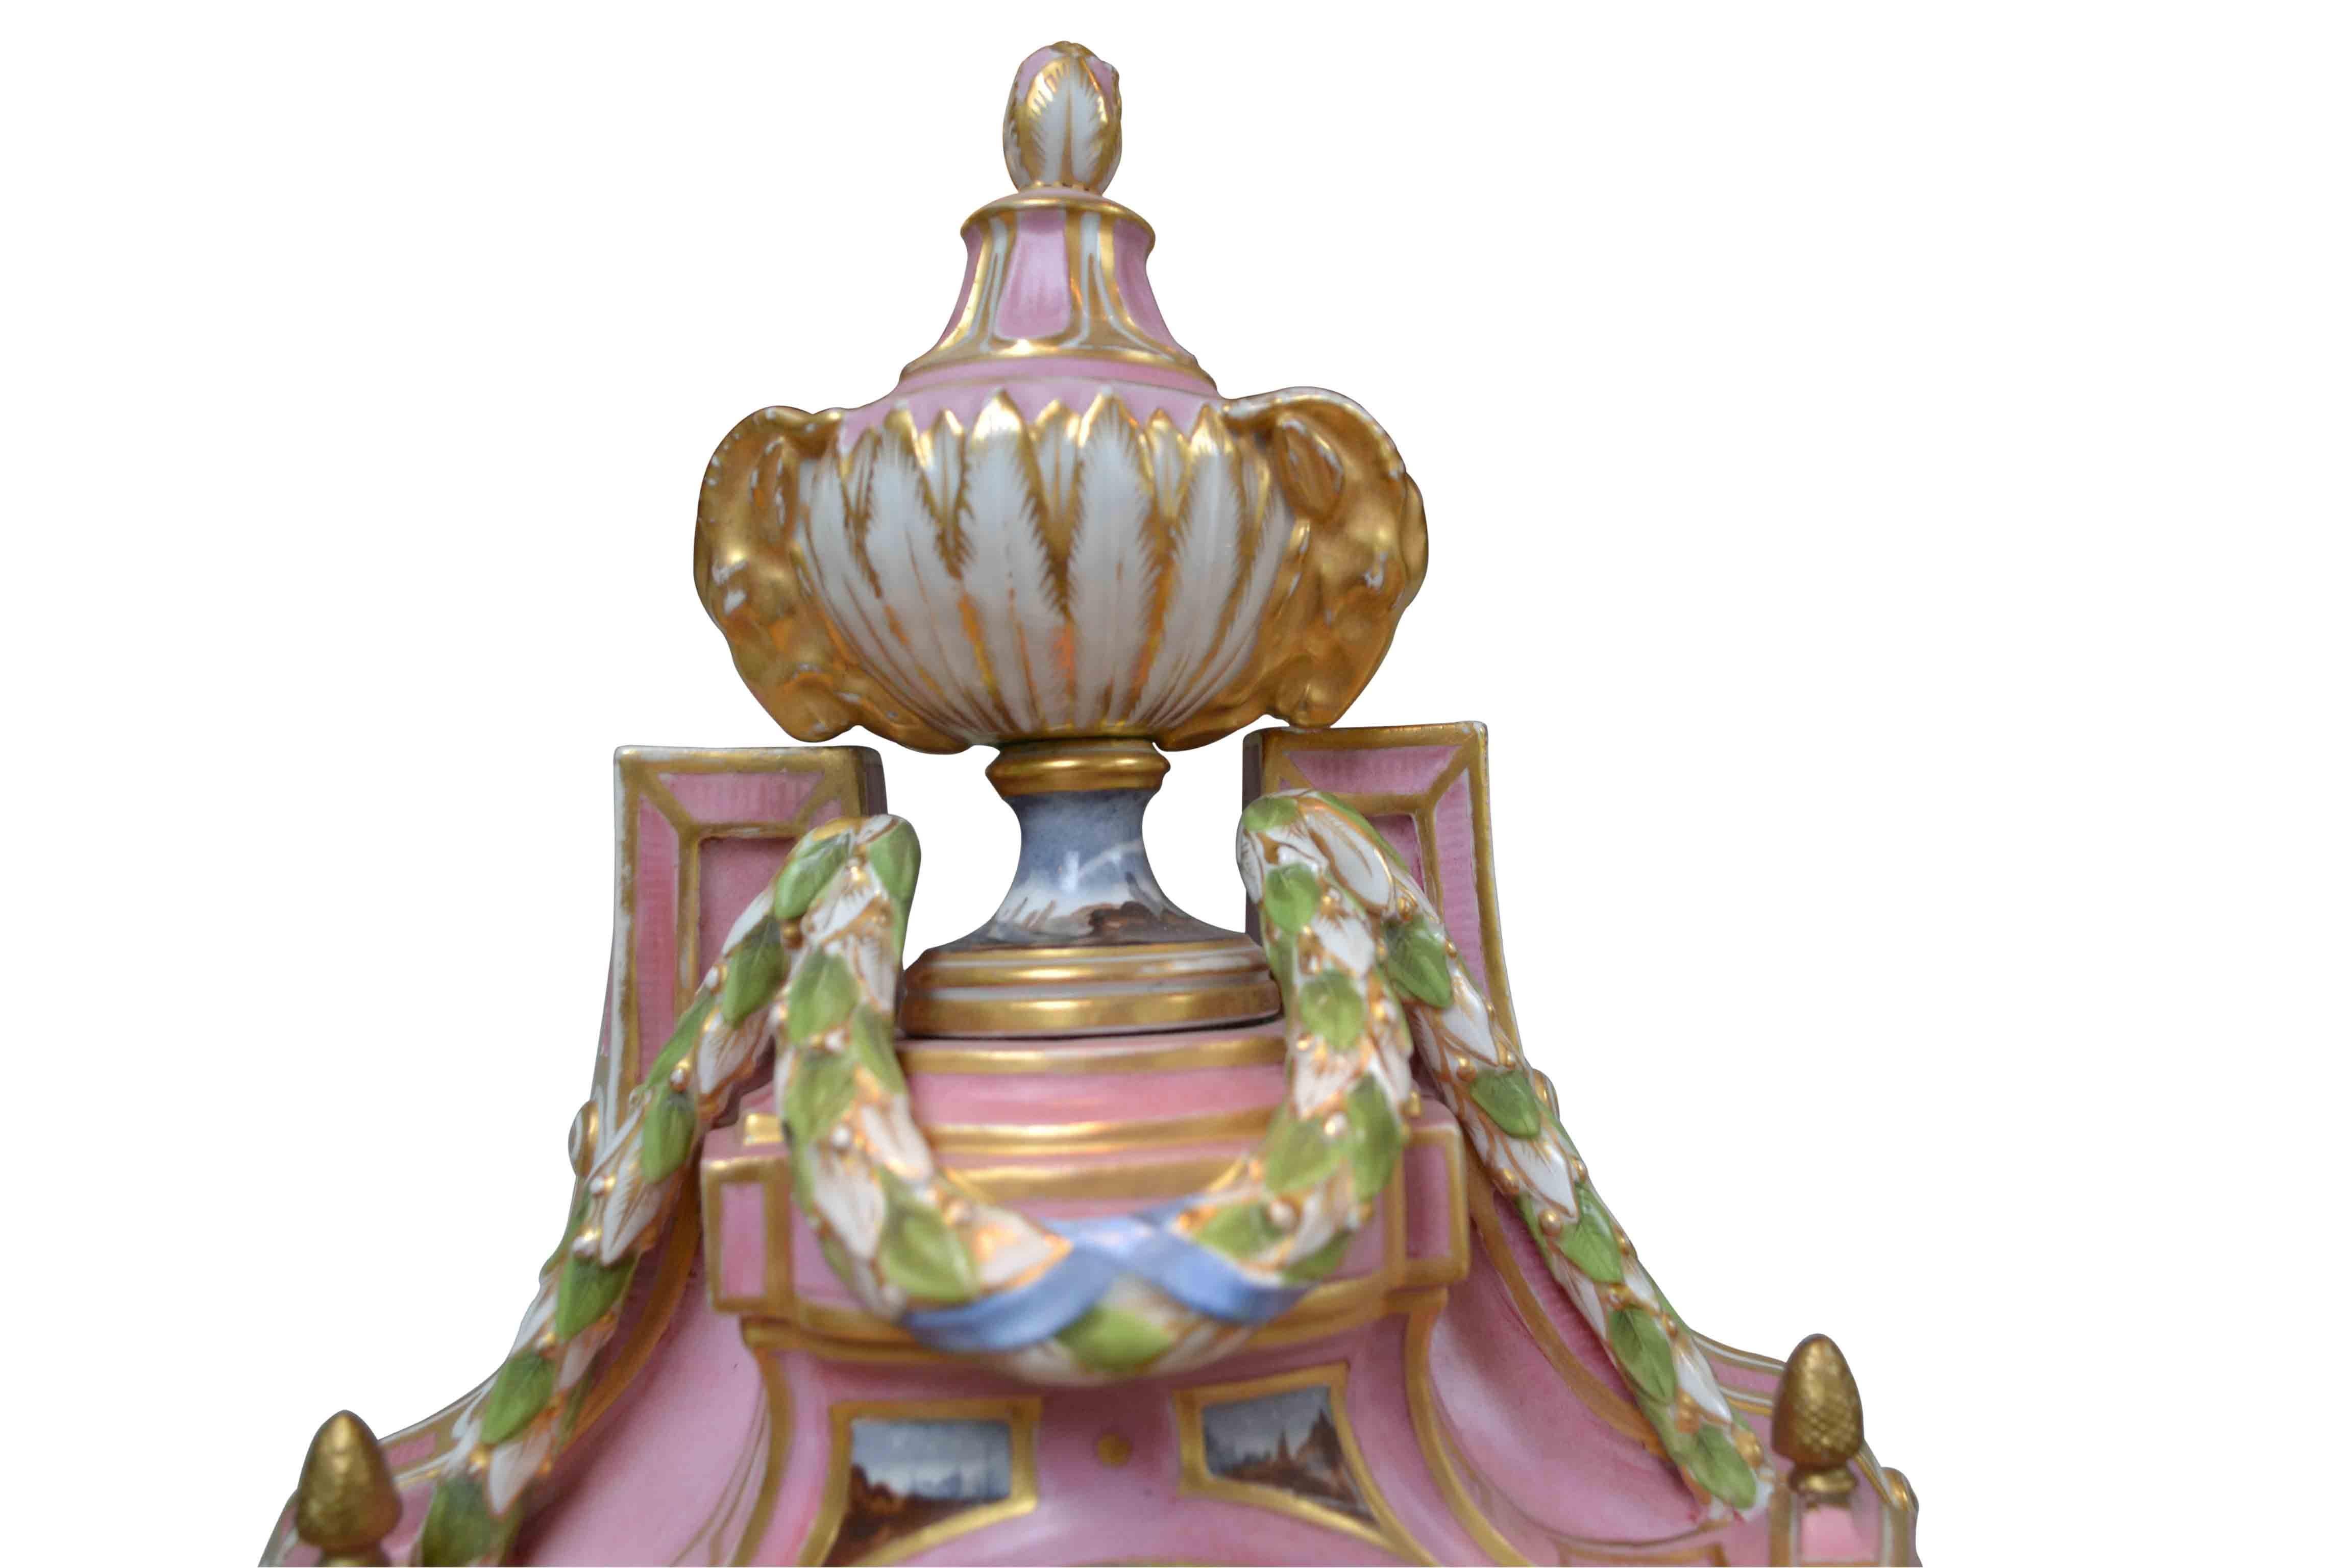 Eine fein dekorierte rosafarbene Porzellan-Kartelluhr im Louis-XVI-Stil; das überwiegend rosafarbene Gehäuse wird von einer klassischen Urne mit Ziegenköpfen und farbigen Emaille-Schwänzen überragt. Unter dem weißen Emailzifferblatt mit römischen